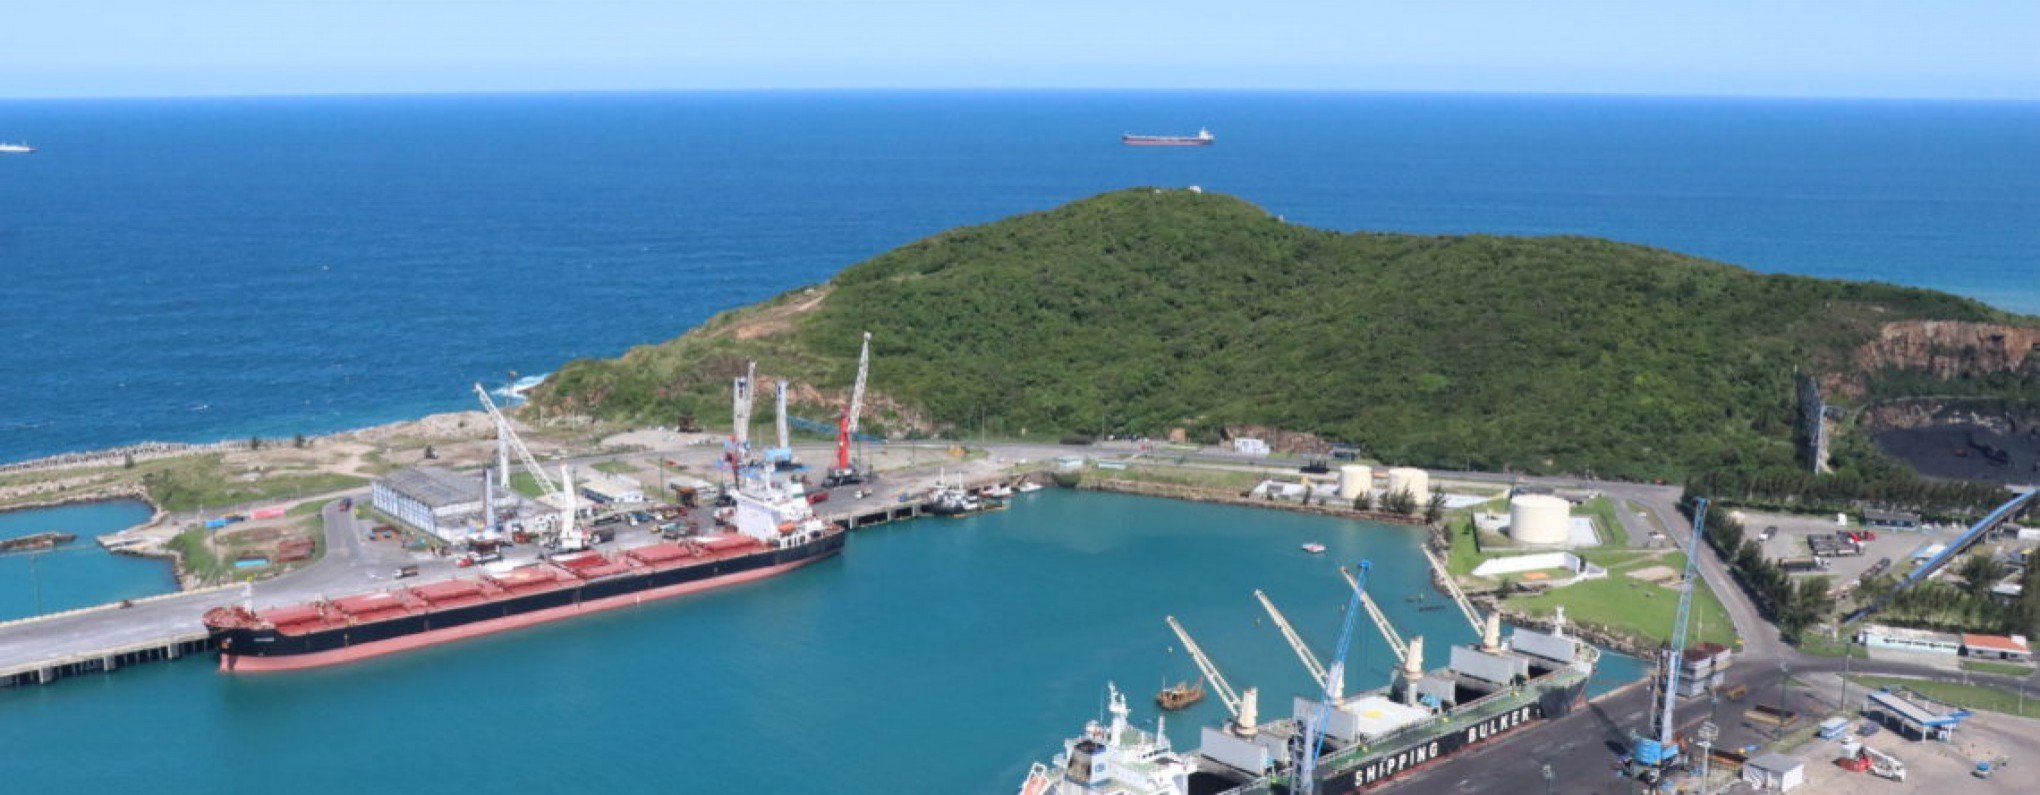 Empresários da região estão com cargas paradas há quase 2 meses em porto de Santa Catarina; entenda o motivo